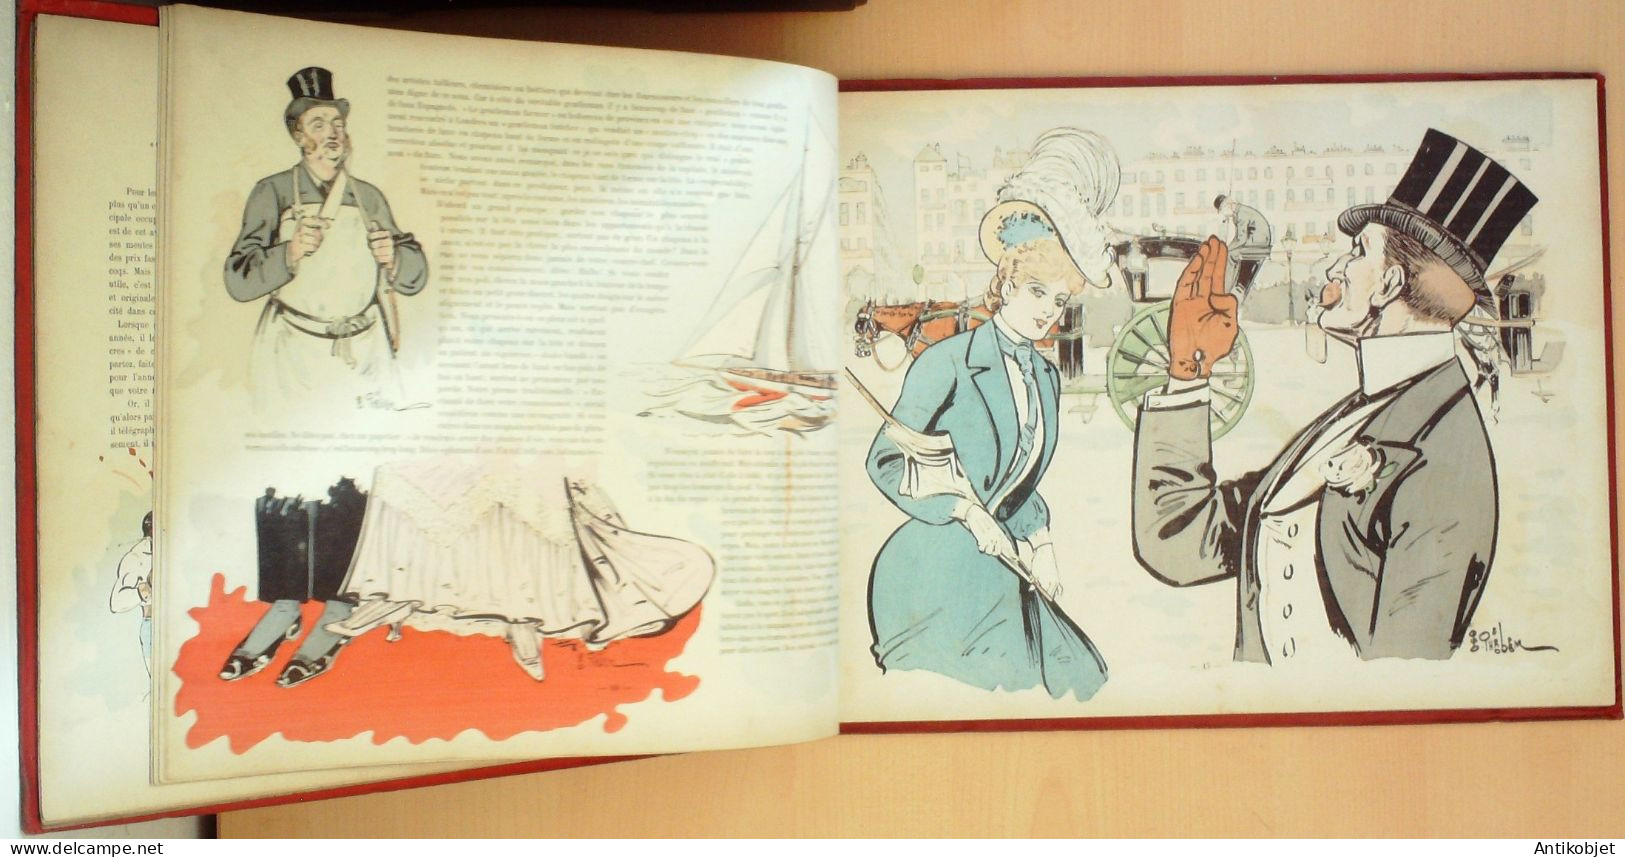 Messieurs les Anglais illustré par Thélem Texte Sergius édition Colin Emile Lagny 1902